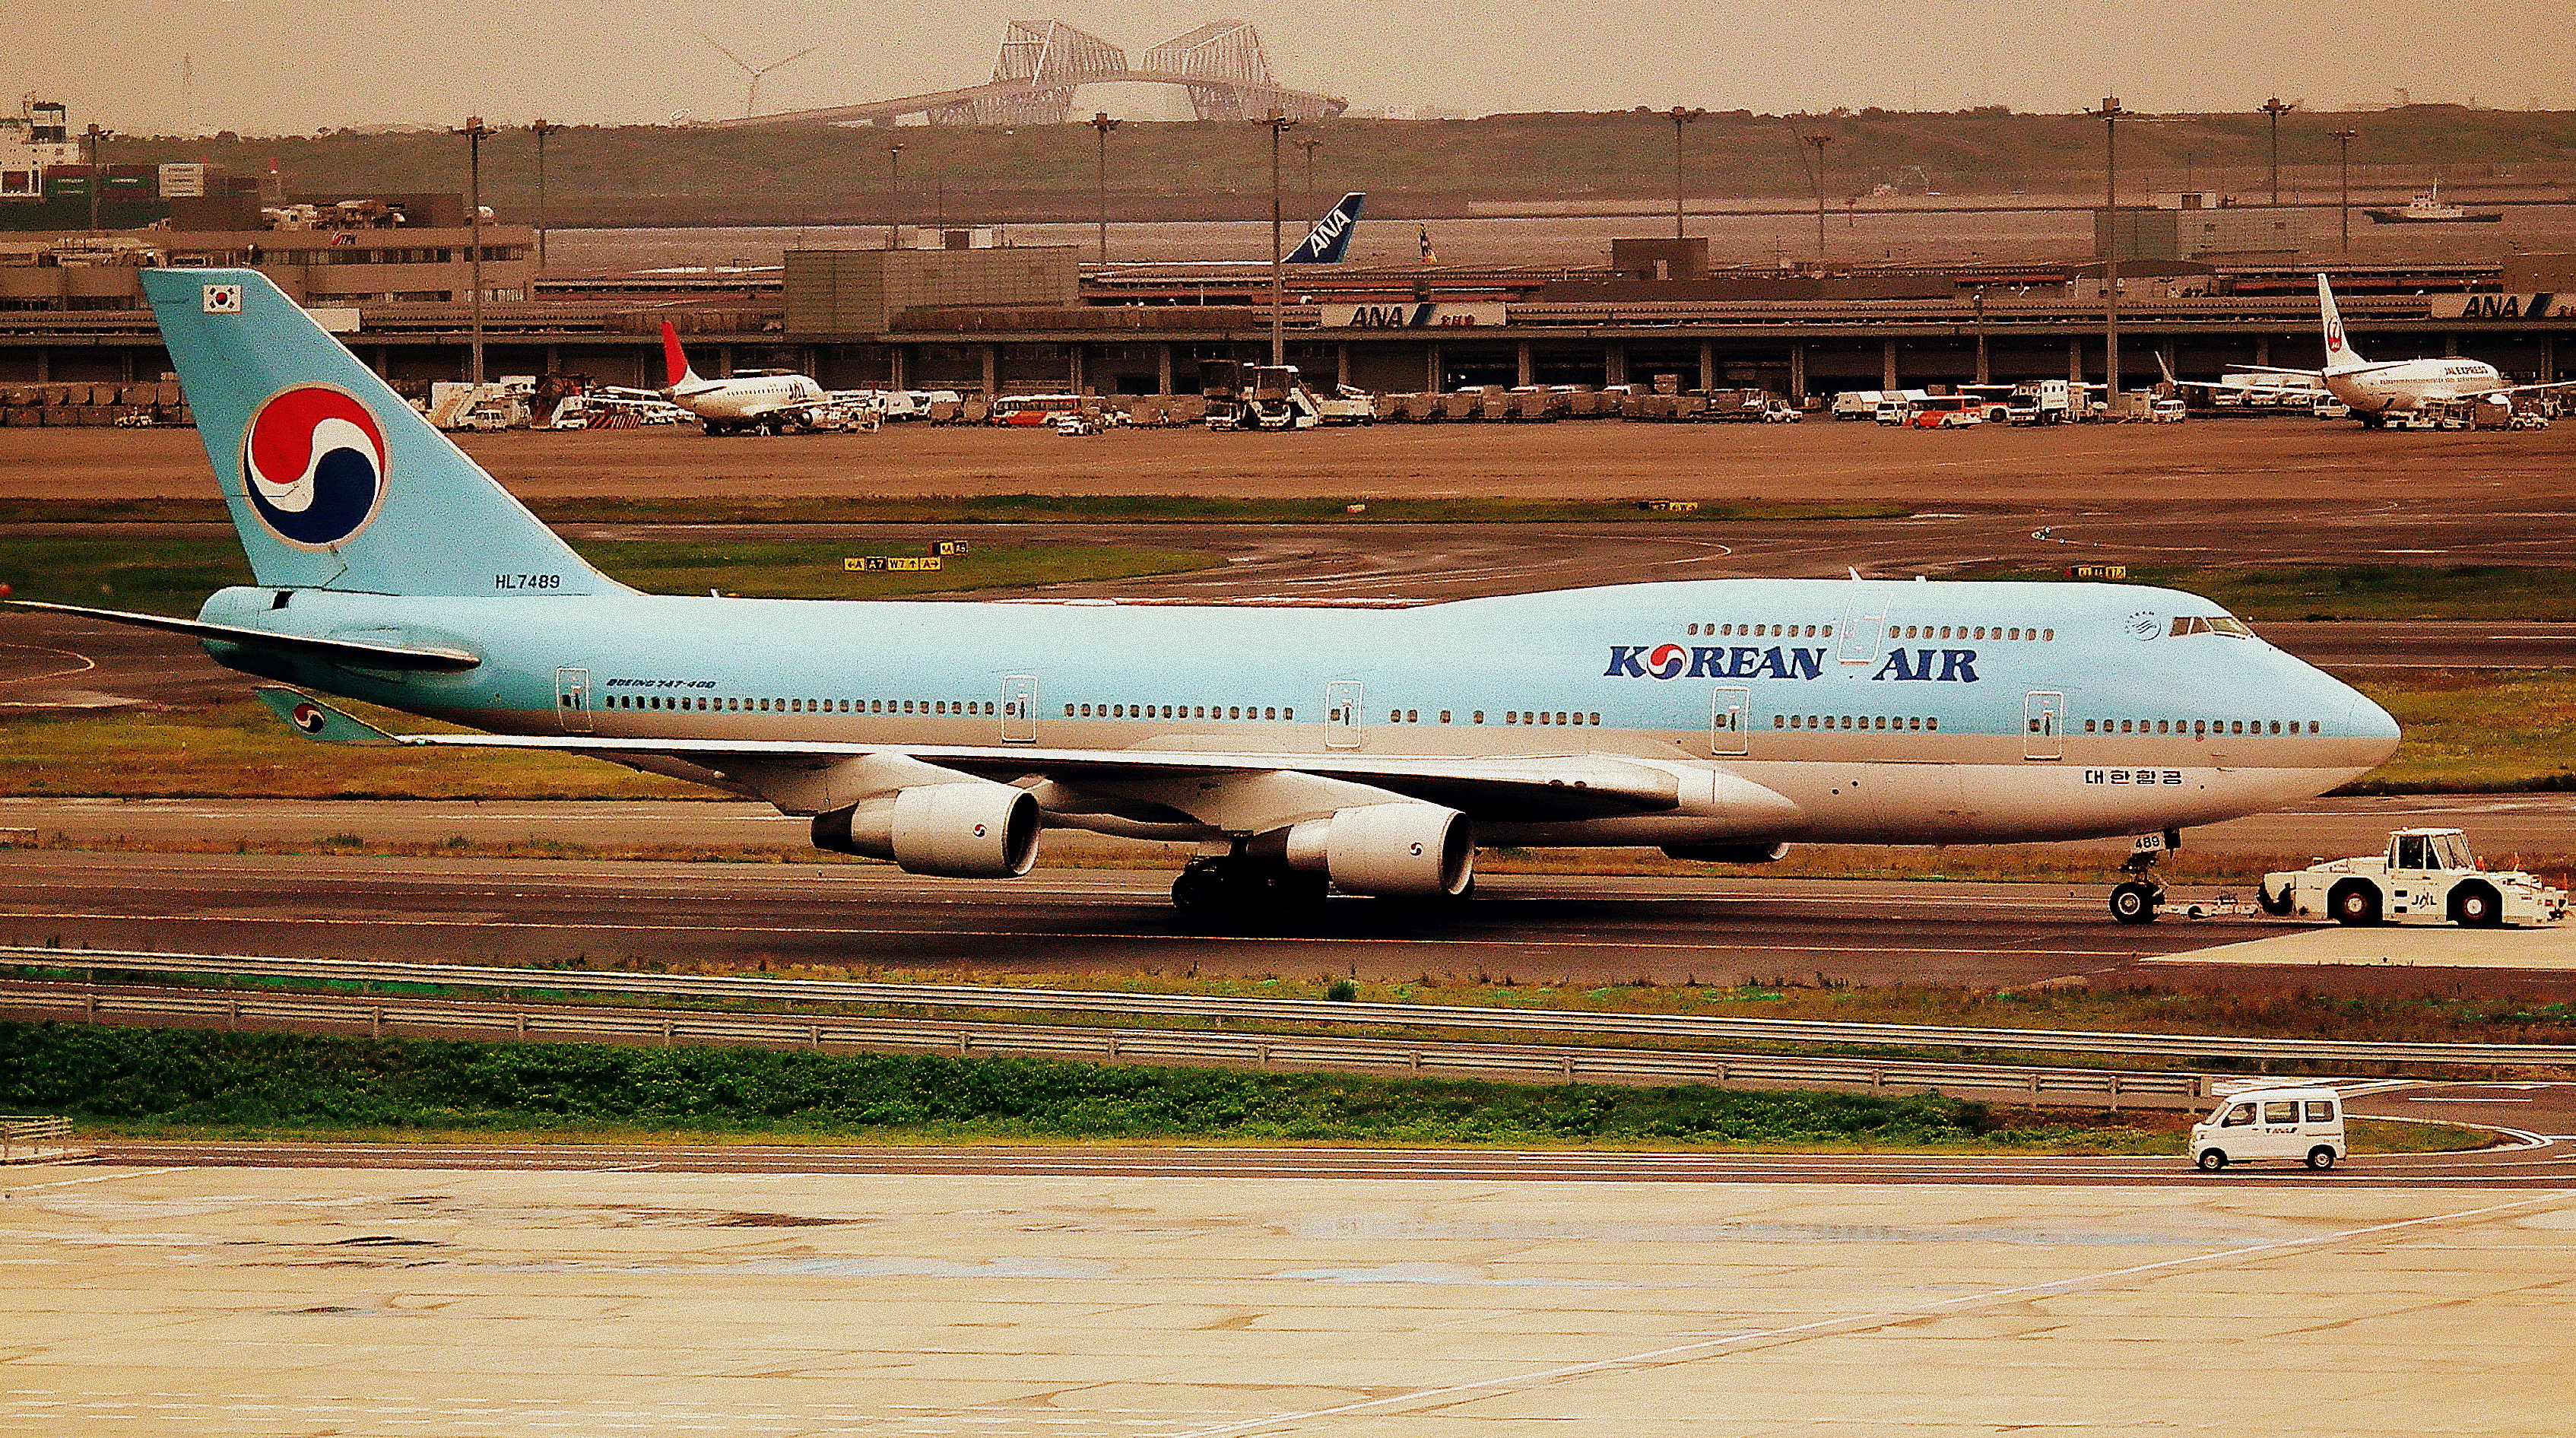 KOREAN AIR BOEING 747-400 AT TOKYO HANEDA AIRPORT JAPAN JUNE 2012 (7519232096)